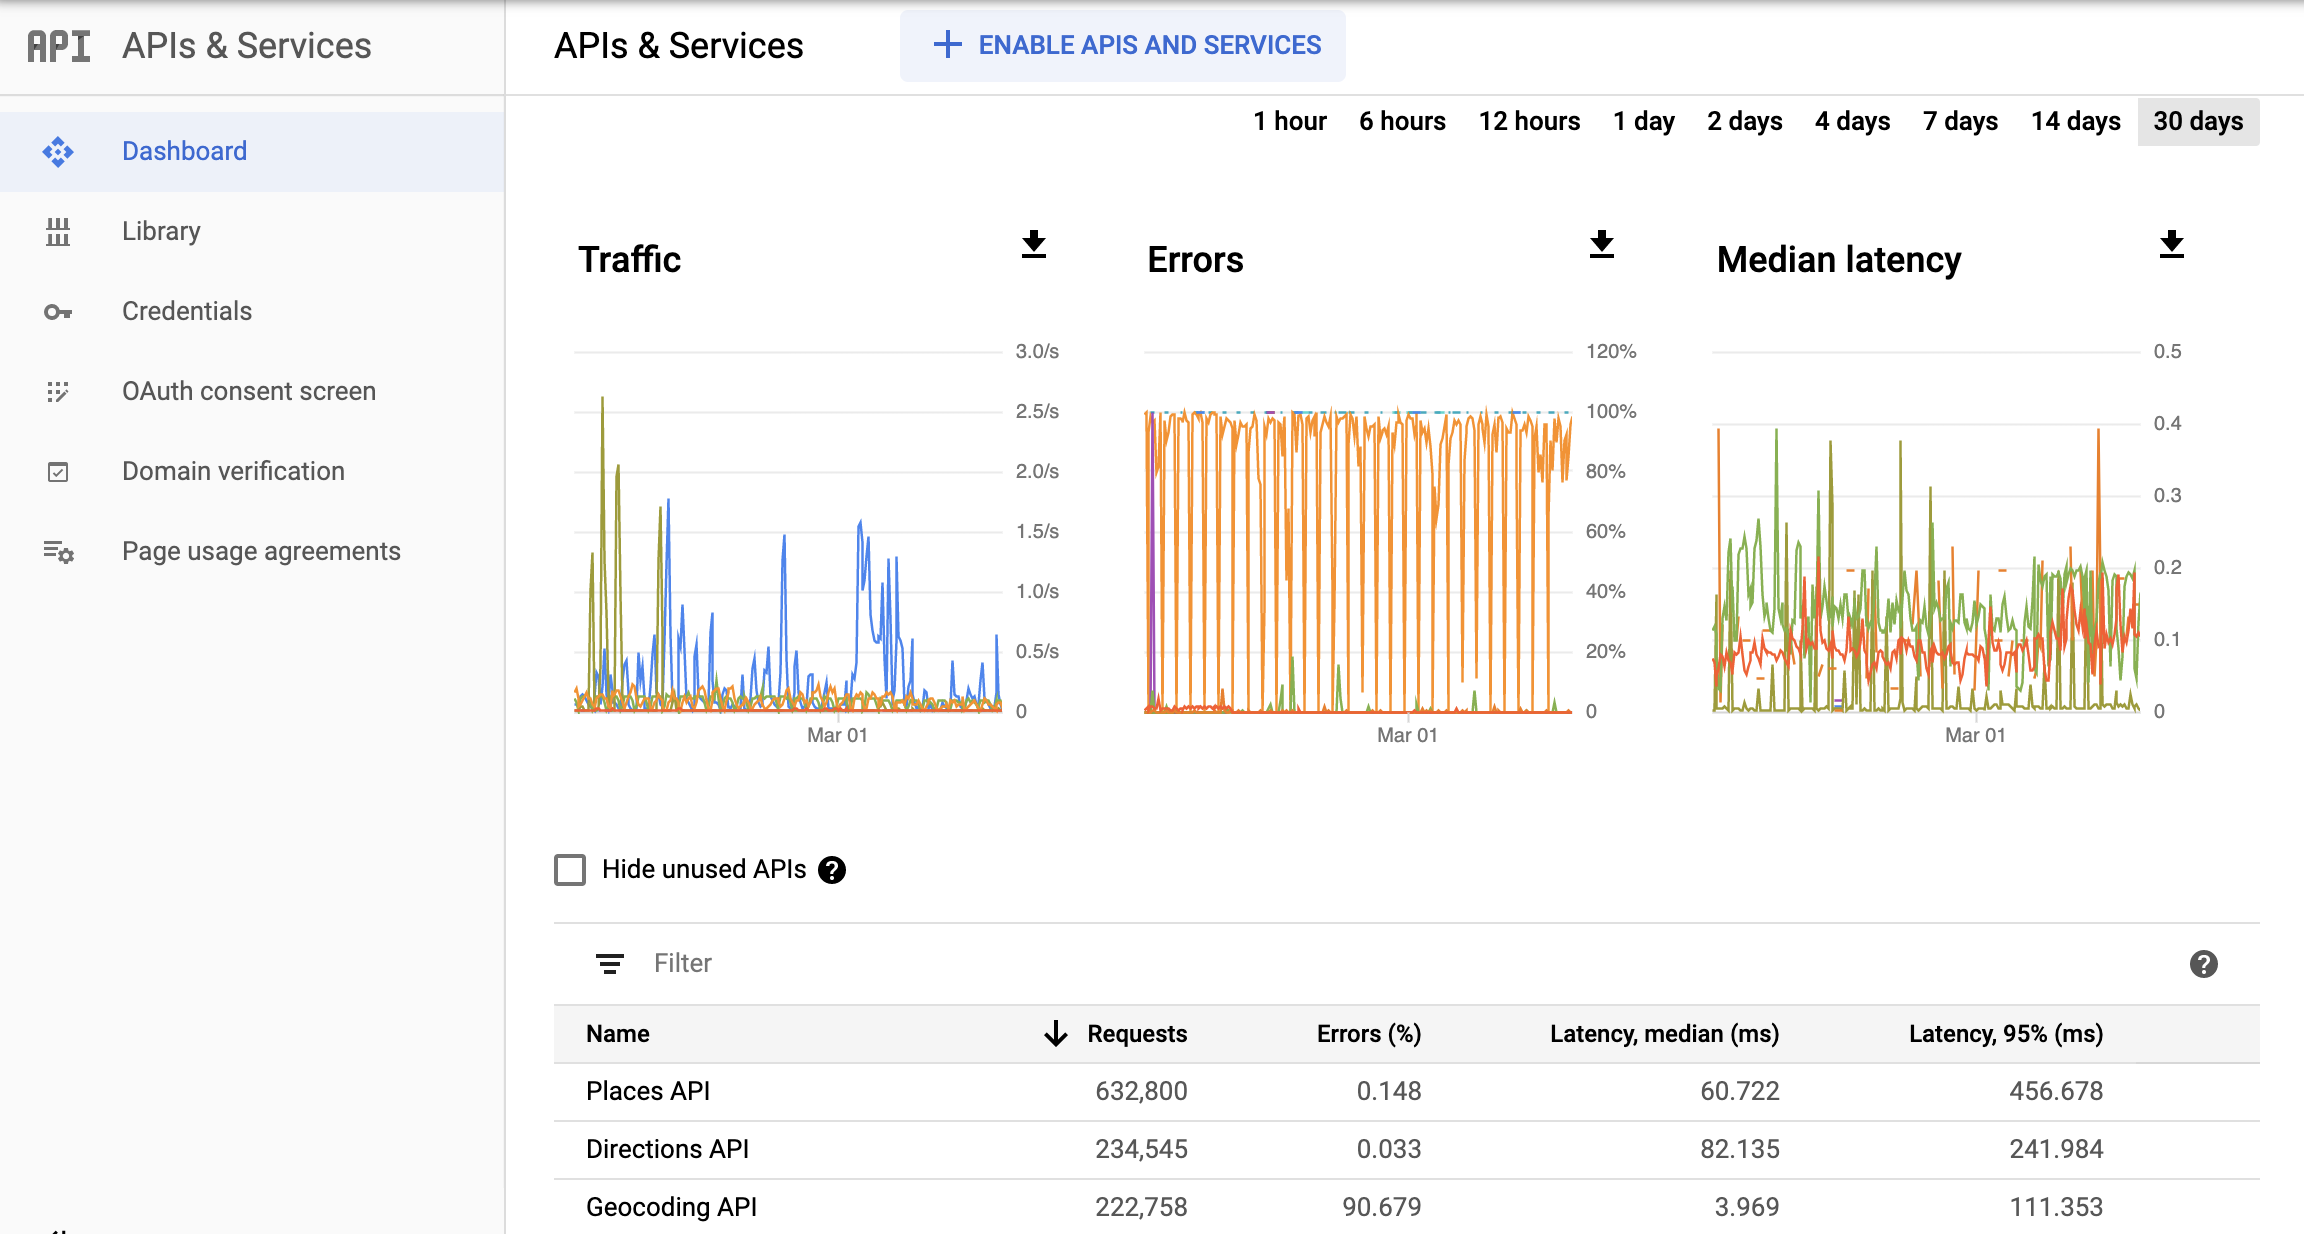 Ảnh chụp màn hình trang API giám sát trong Google Cloud Console, cho thấy các trang API & Dịch vụ trên báo cáo. Báo cáo này cho bạn thấy các biểu đồ riêng biệt về Lưu lượng truy cập, Lỗi và Độ trễ trung bình. Các biểu đồ này có thể hiển thị dữ liệu trong một giờ cho đến 30 ngày.